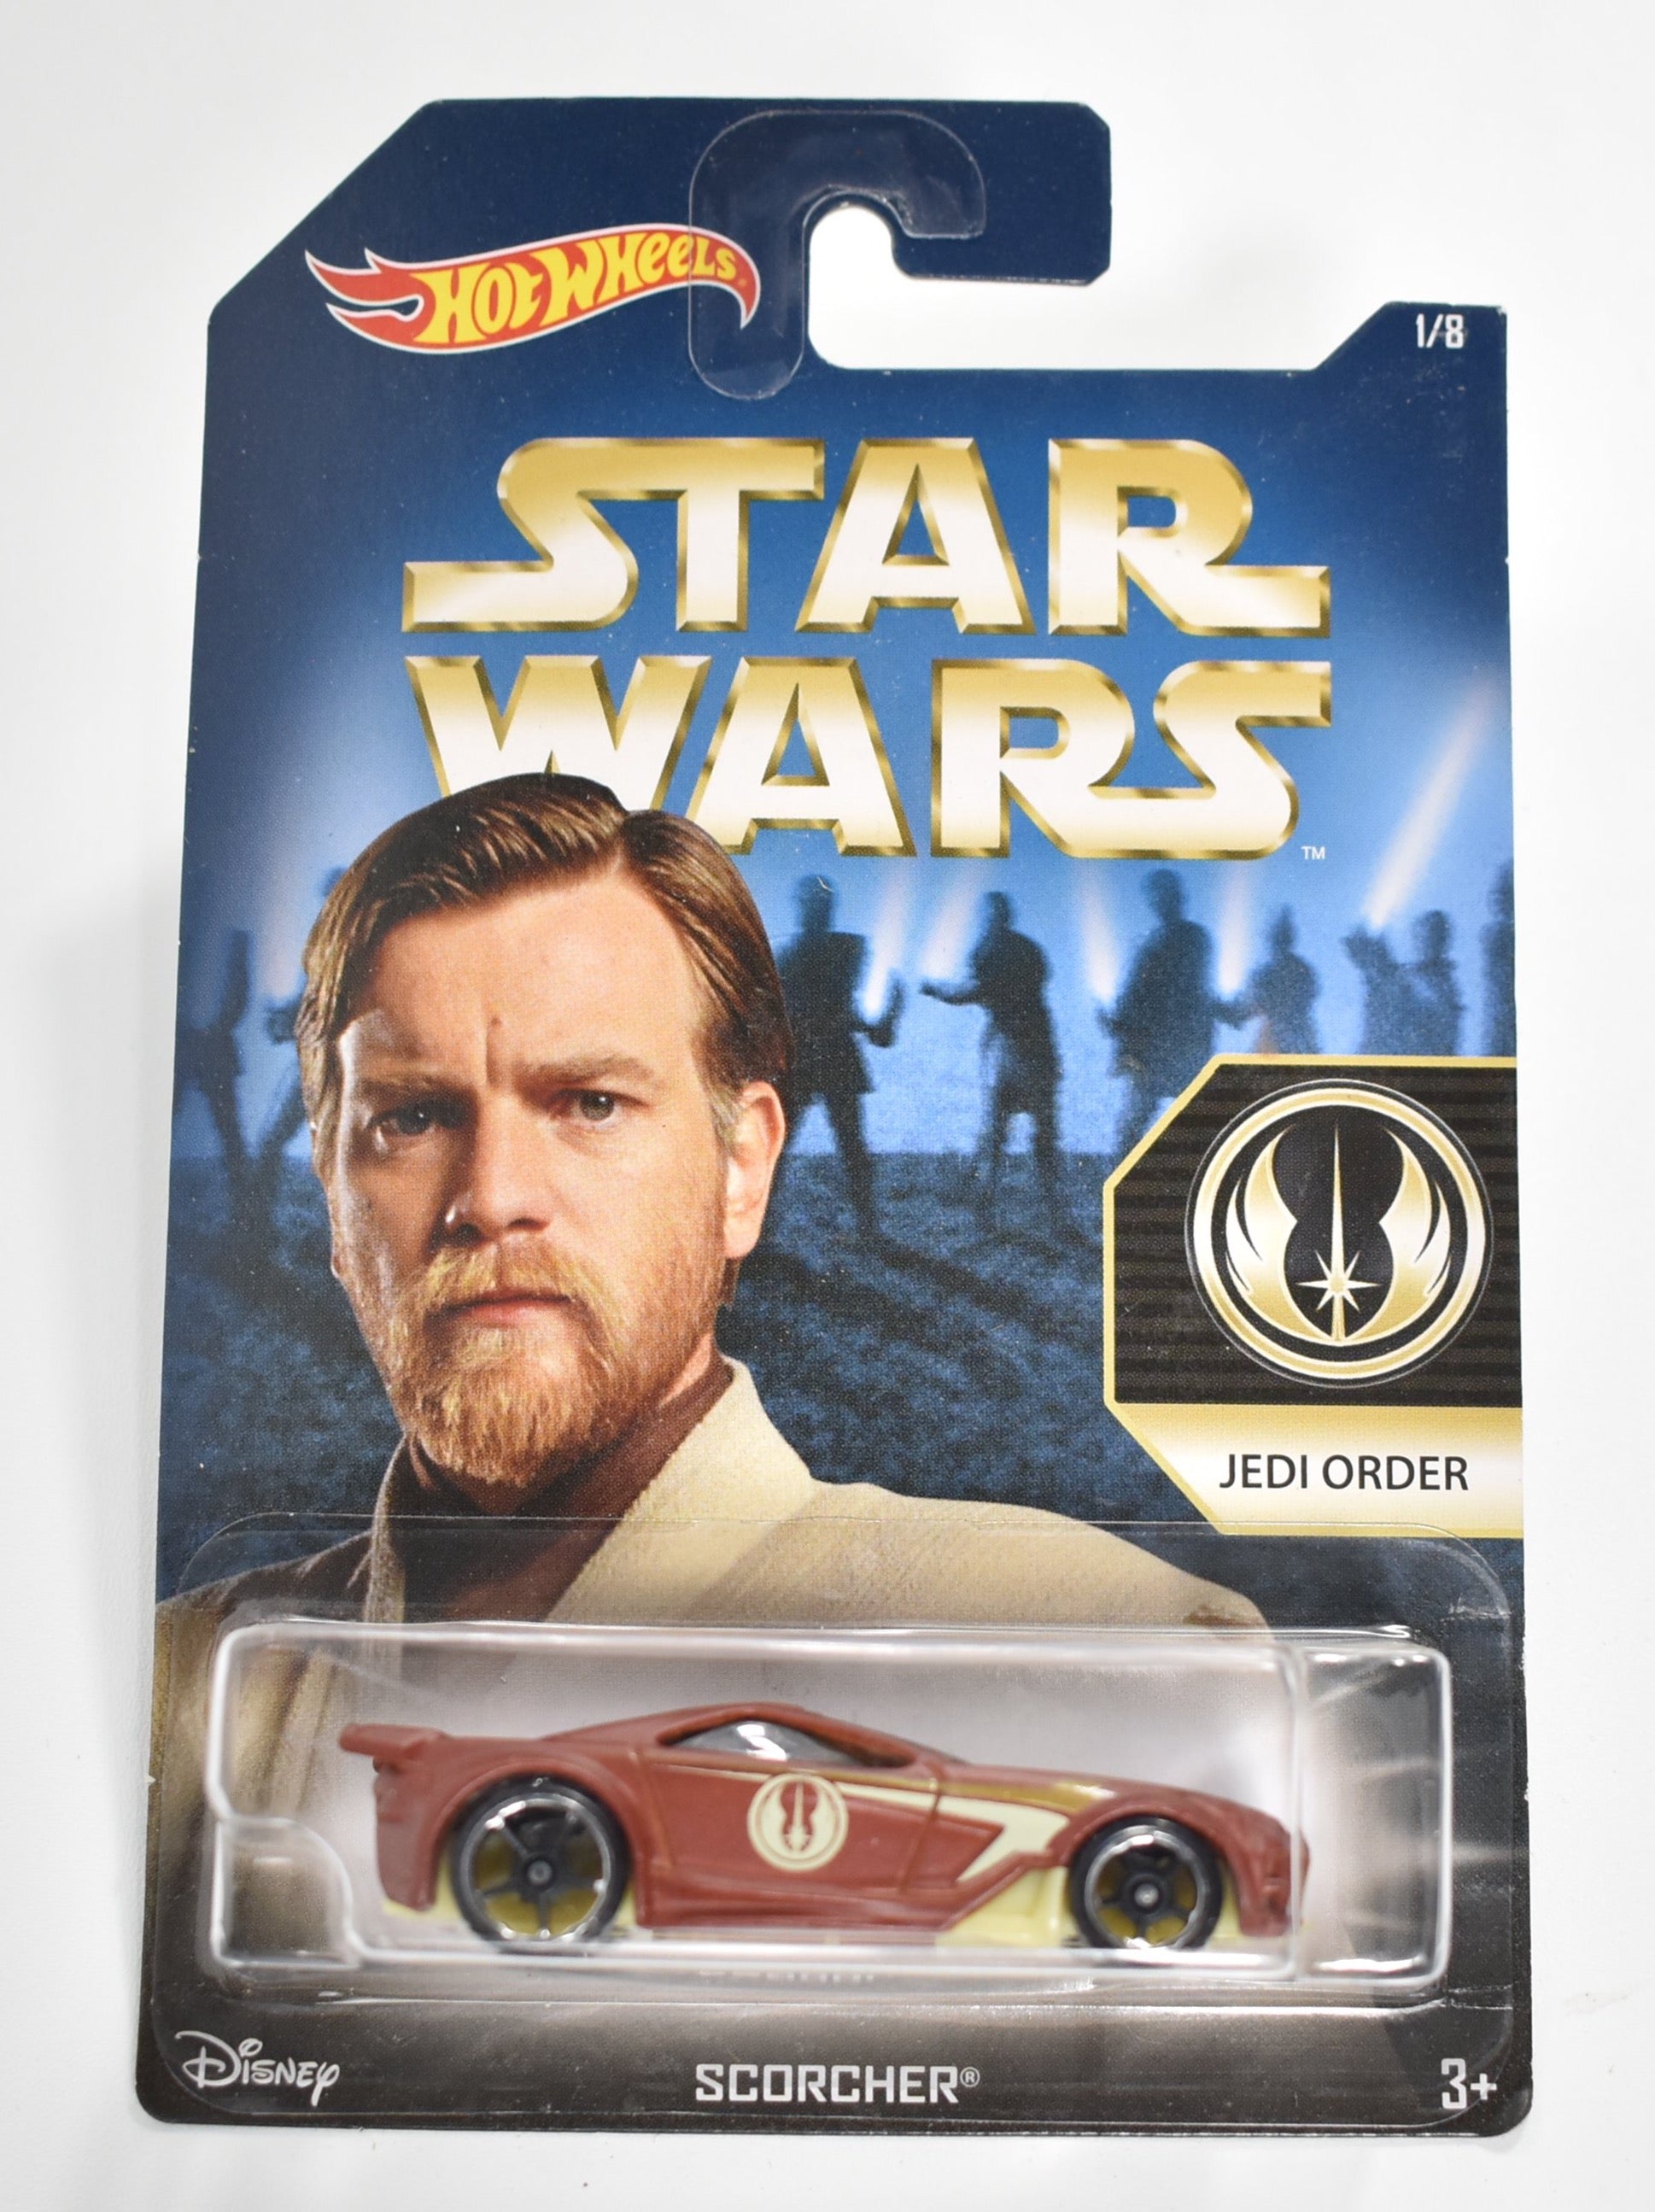 Hot Wheels diecast car Star Wars Jedi Order Scorcher 1/8